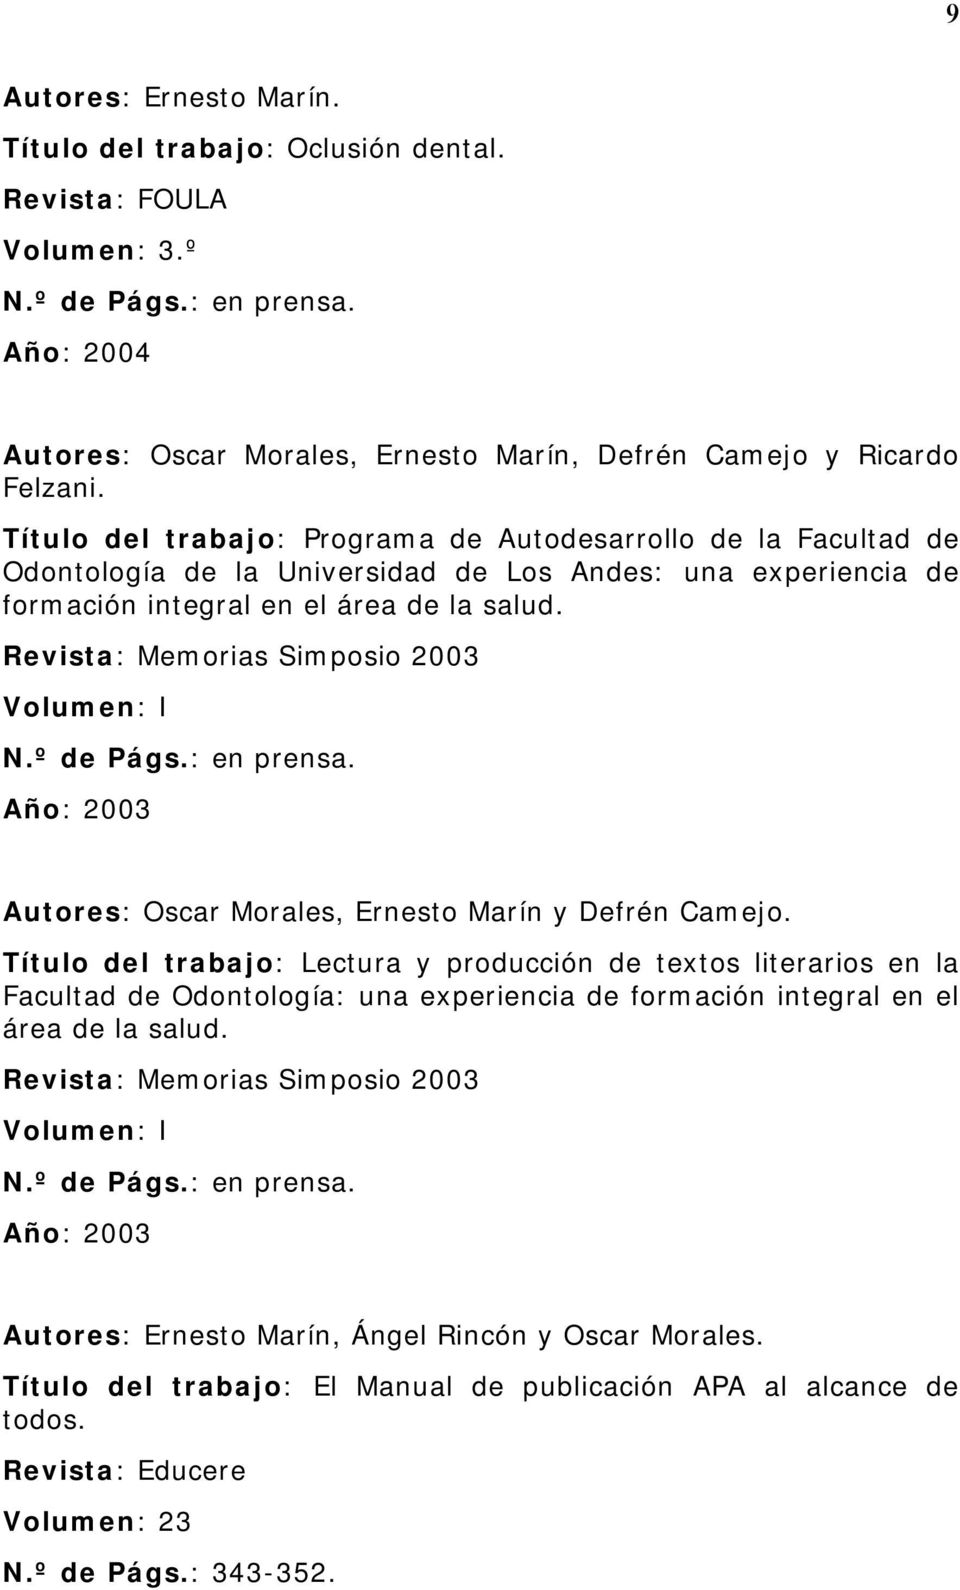 Revista: Memorias Simposio 2003 Volumen: I N.º de Págs.: en prensa. Autores: Oscar Morales, Ernesto Marín y Defrén Camejo.